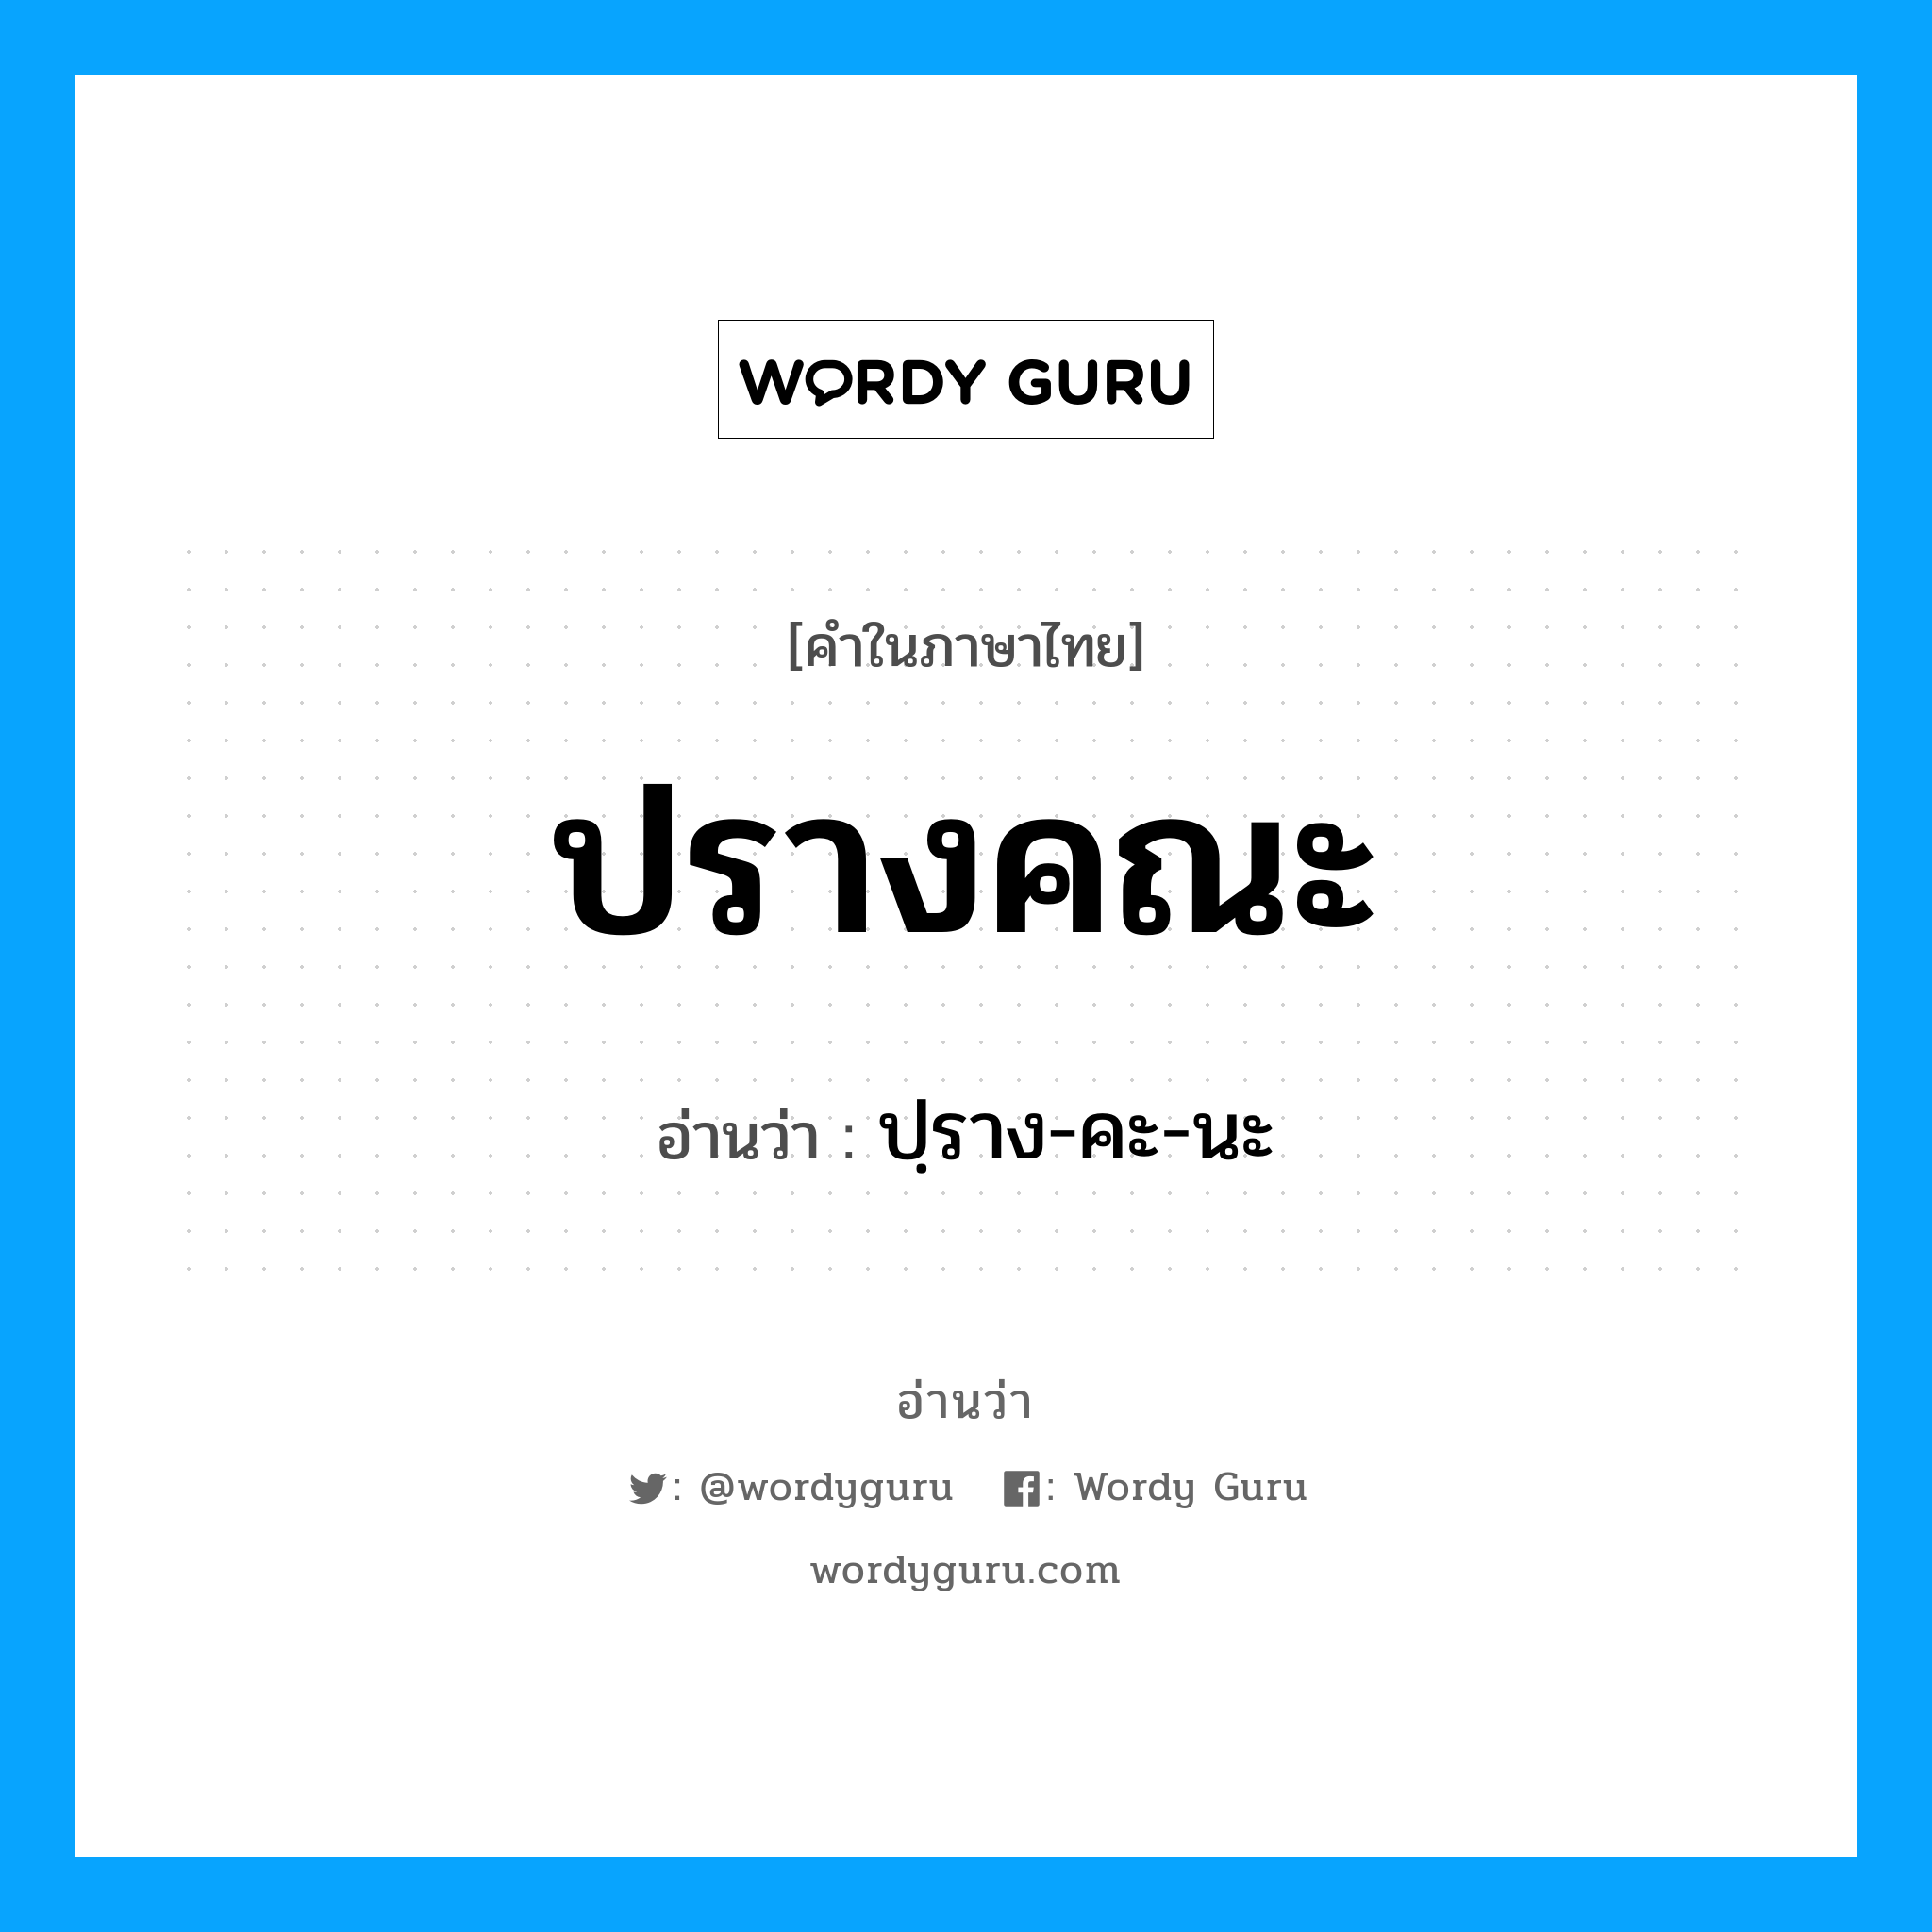 ปฺราง-คะ-นะ เป็นคำอ่านของคำไหน?, คำในภาษาไทย ปฺราง-คะ-นะ อ่านว่า ปรางคณะ